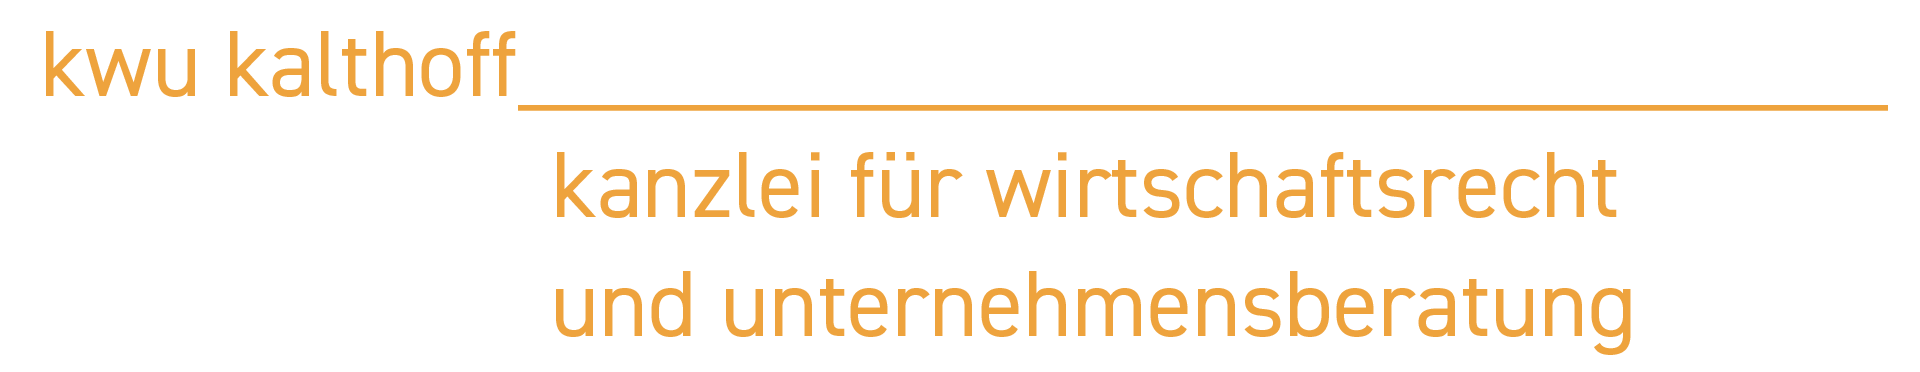 logo mit kwu Kalthoff Kanzlei für Wirtschaftsrecht und Unternehmensberatung Schriftzug